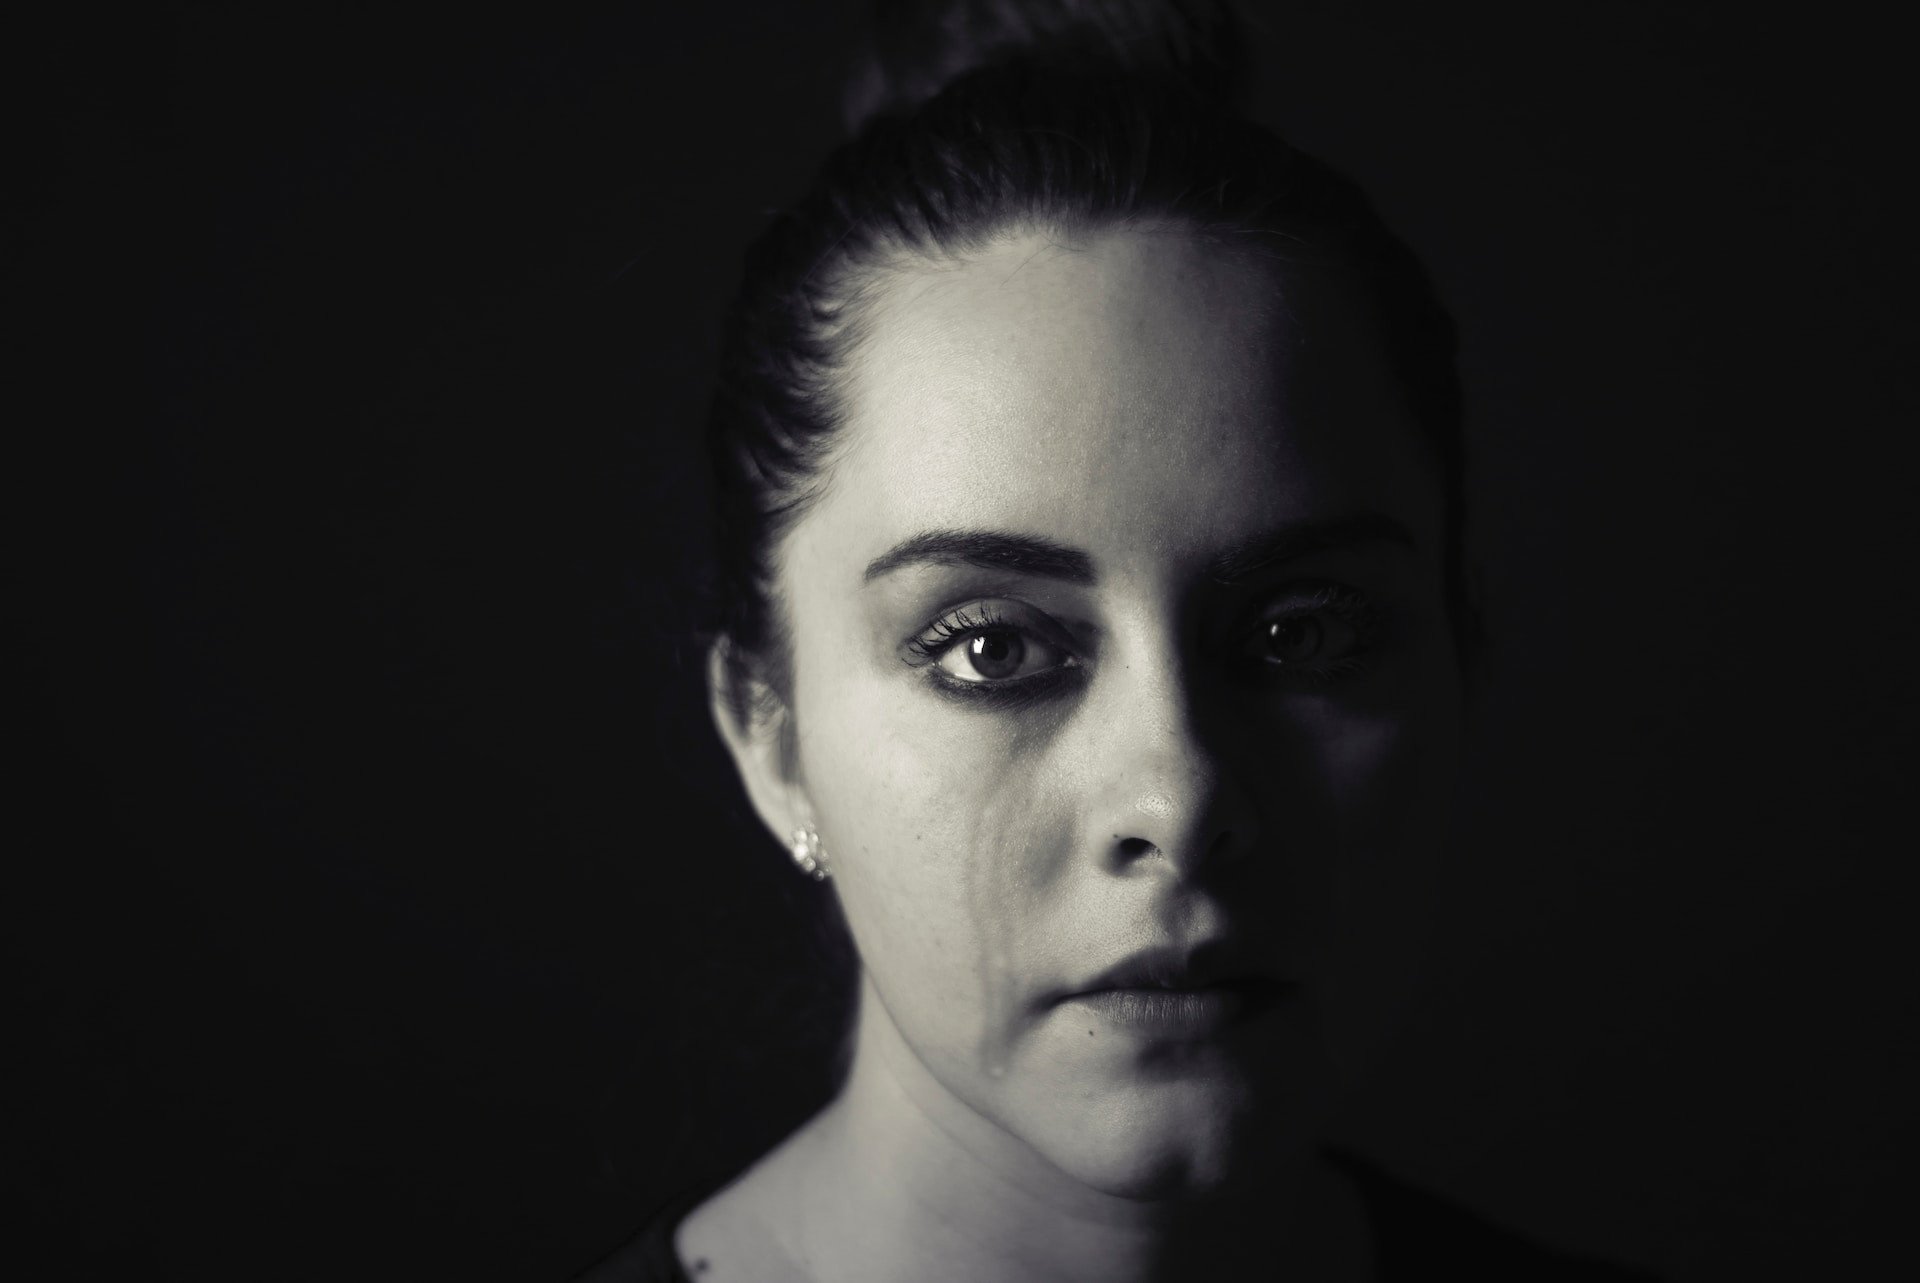 Imaginea unei femei plângând în întuneric simbolizează durerea tăcută a abuzului domestic; articolul nostru explorează călătoria de la suferință la renaștere și oferă strategii de vindecare și suport pentru supraviețuitori